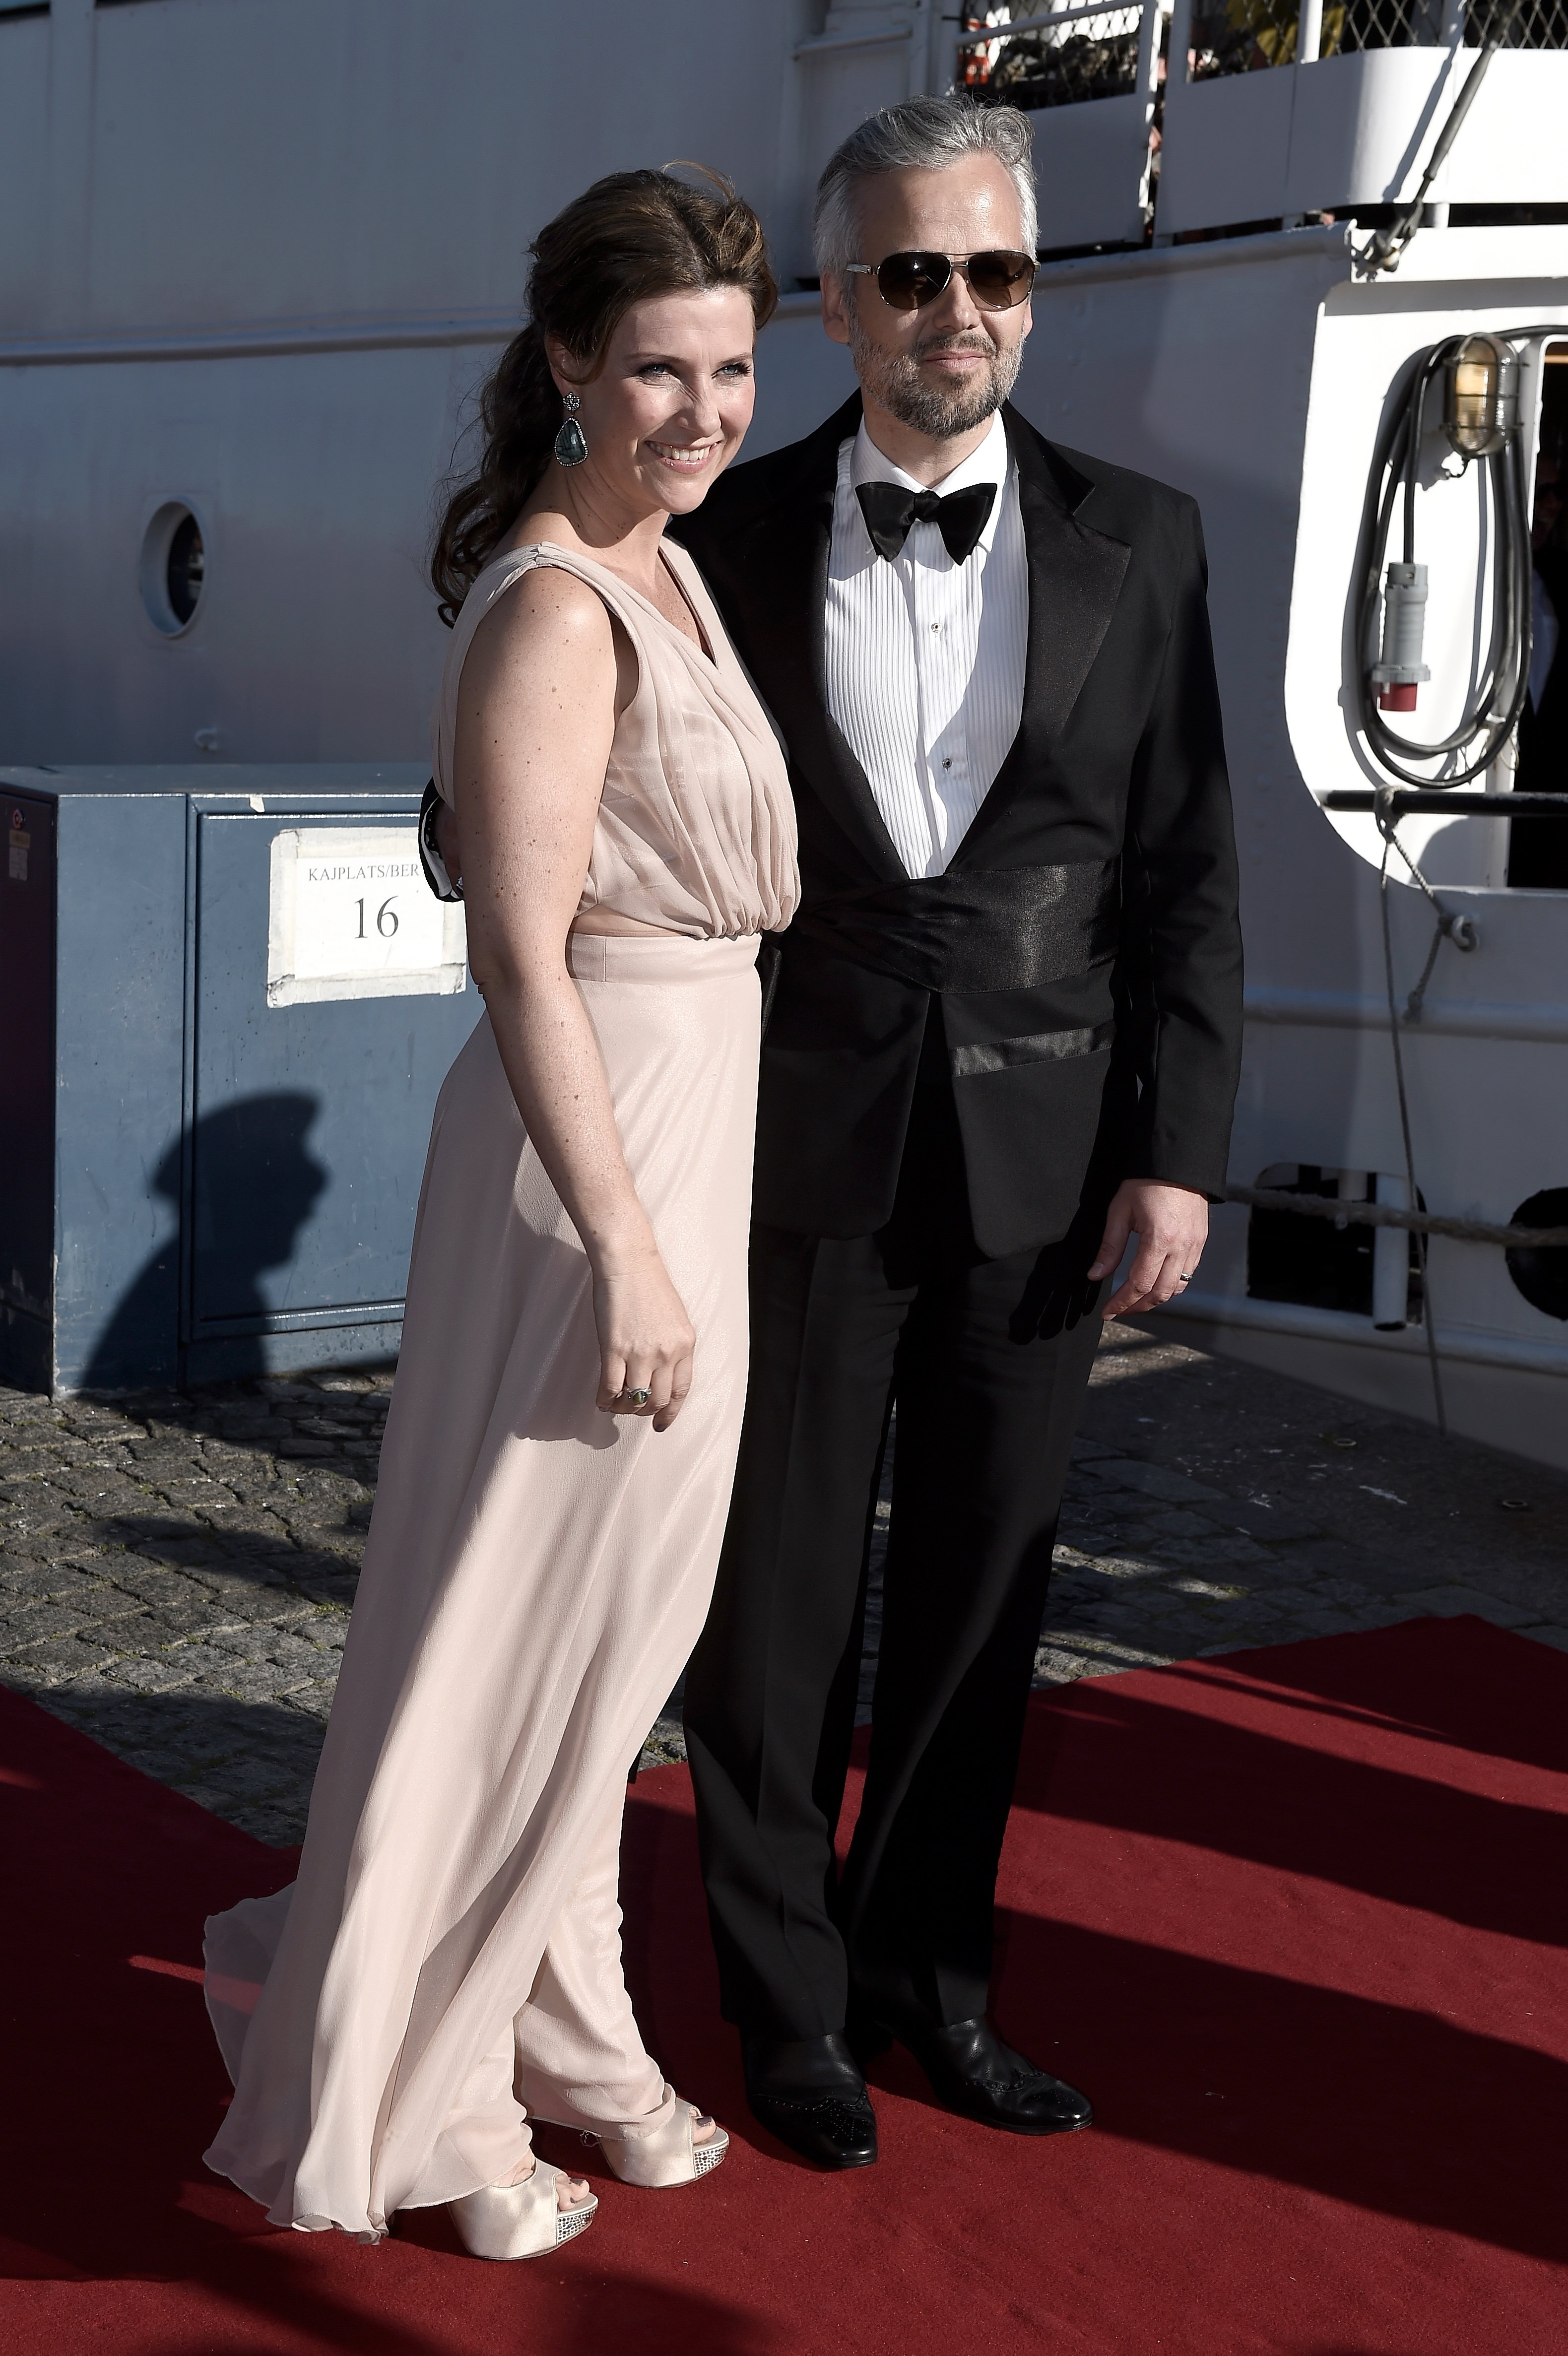 Prinzessin Maertha Louise von Norwegen und ihr Ehemann Ari Behn treffen am 12. Juni 2015 zum Abendessen vor der Hochzeit für Prinz Carl Philip und Sofia Hellqvist in Stockholm, Schweden ein. | Quelle: Getty Images